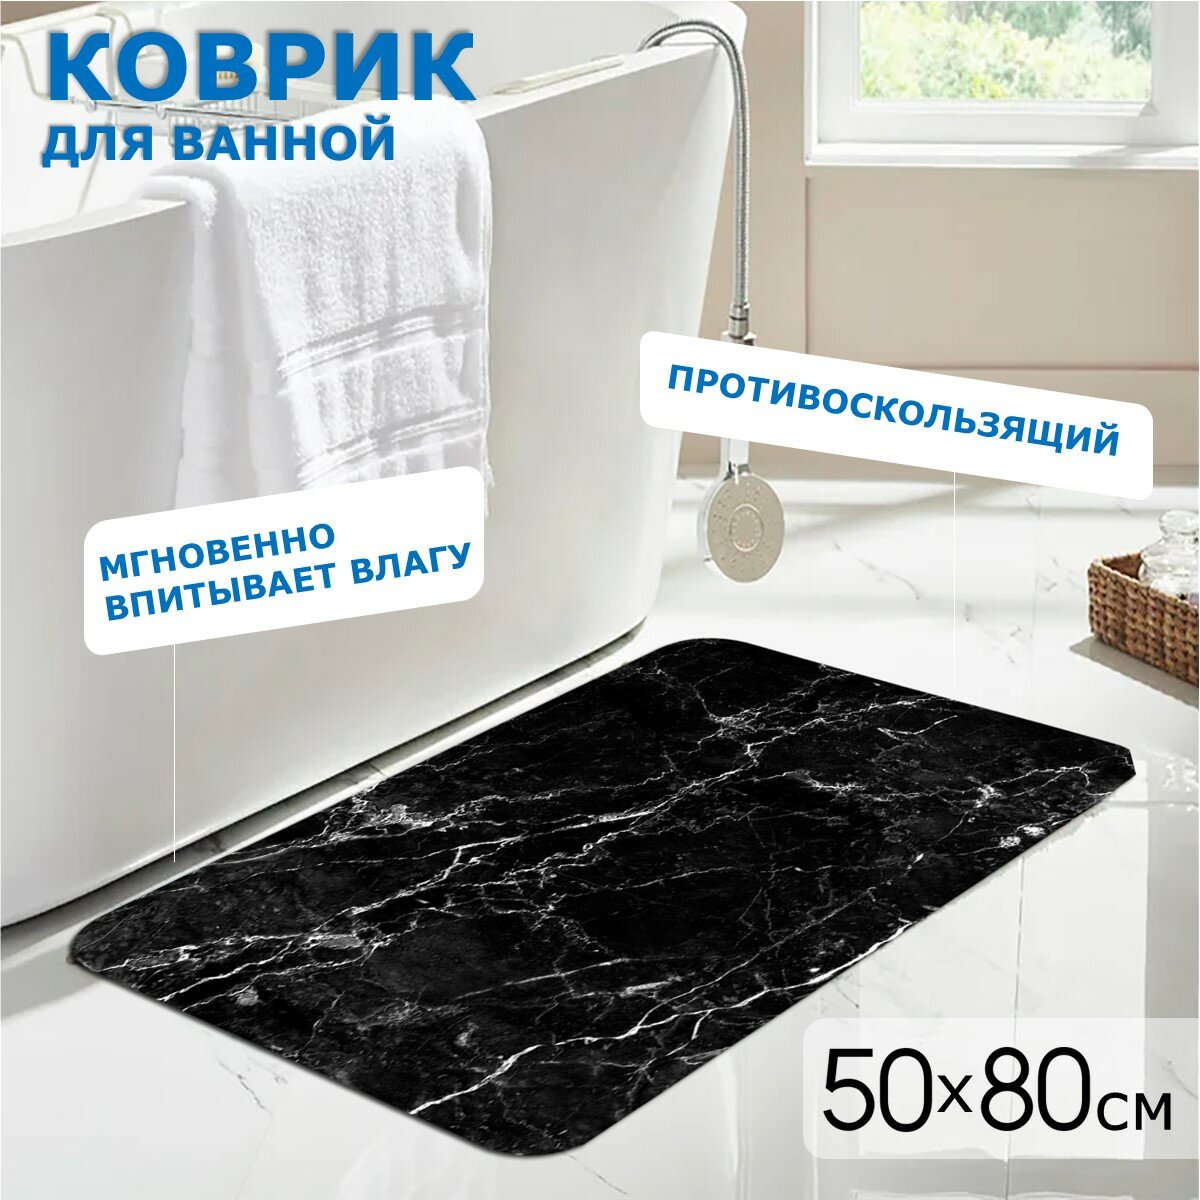 Коврик для ванной и туалета Ridberg Marble 50*80 см, влаговпитывающий, быстросохнущий, противоскользящий, прикроватный коврик, черный